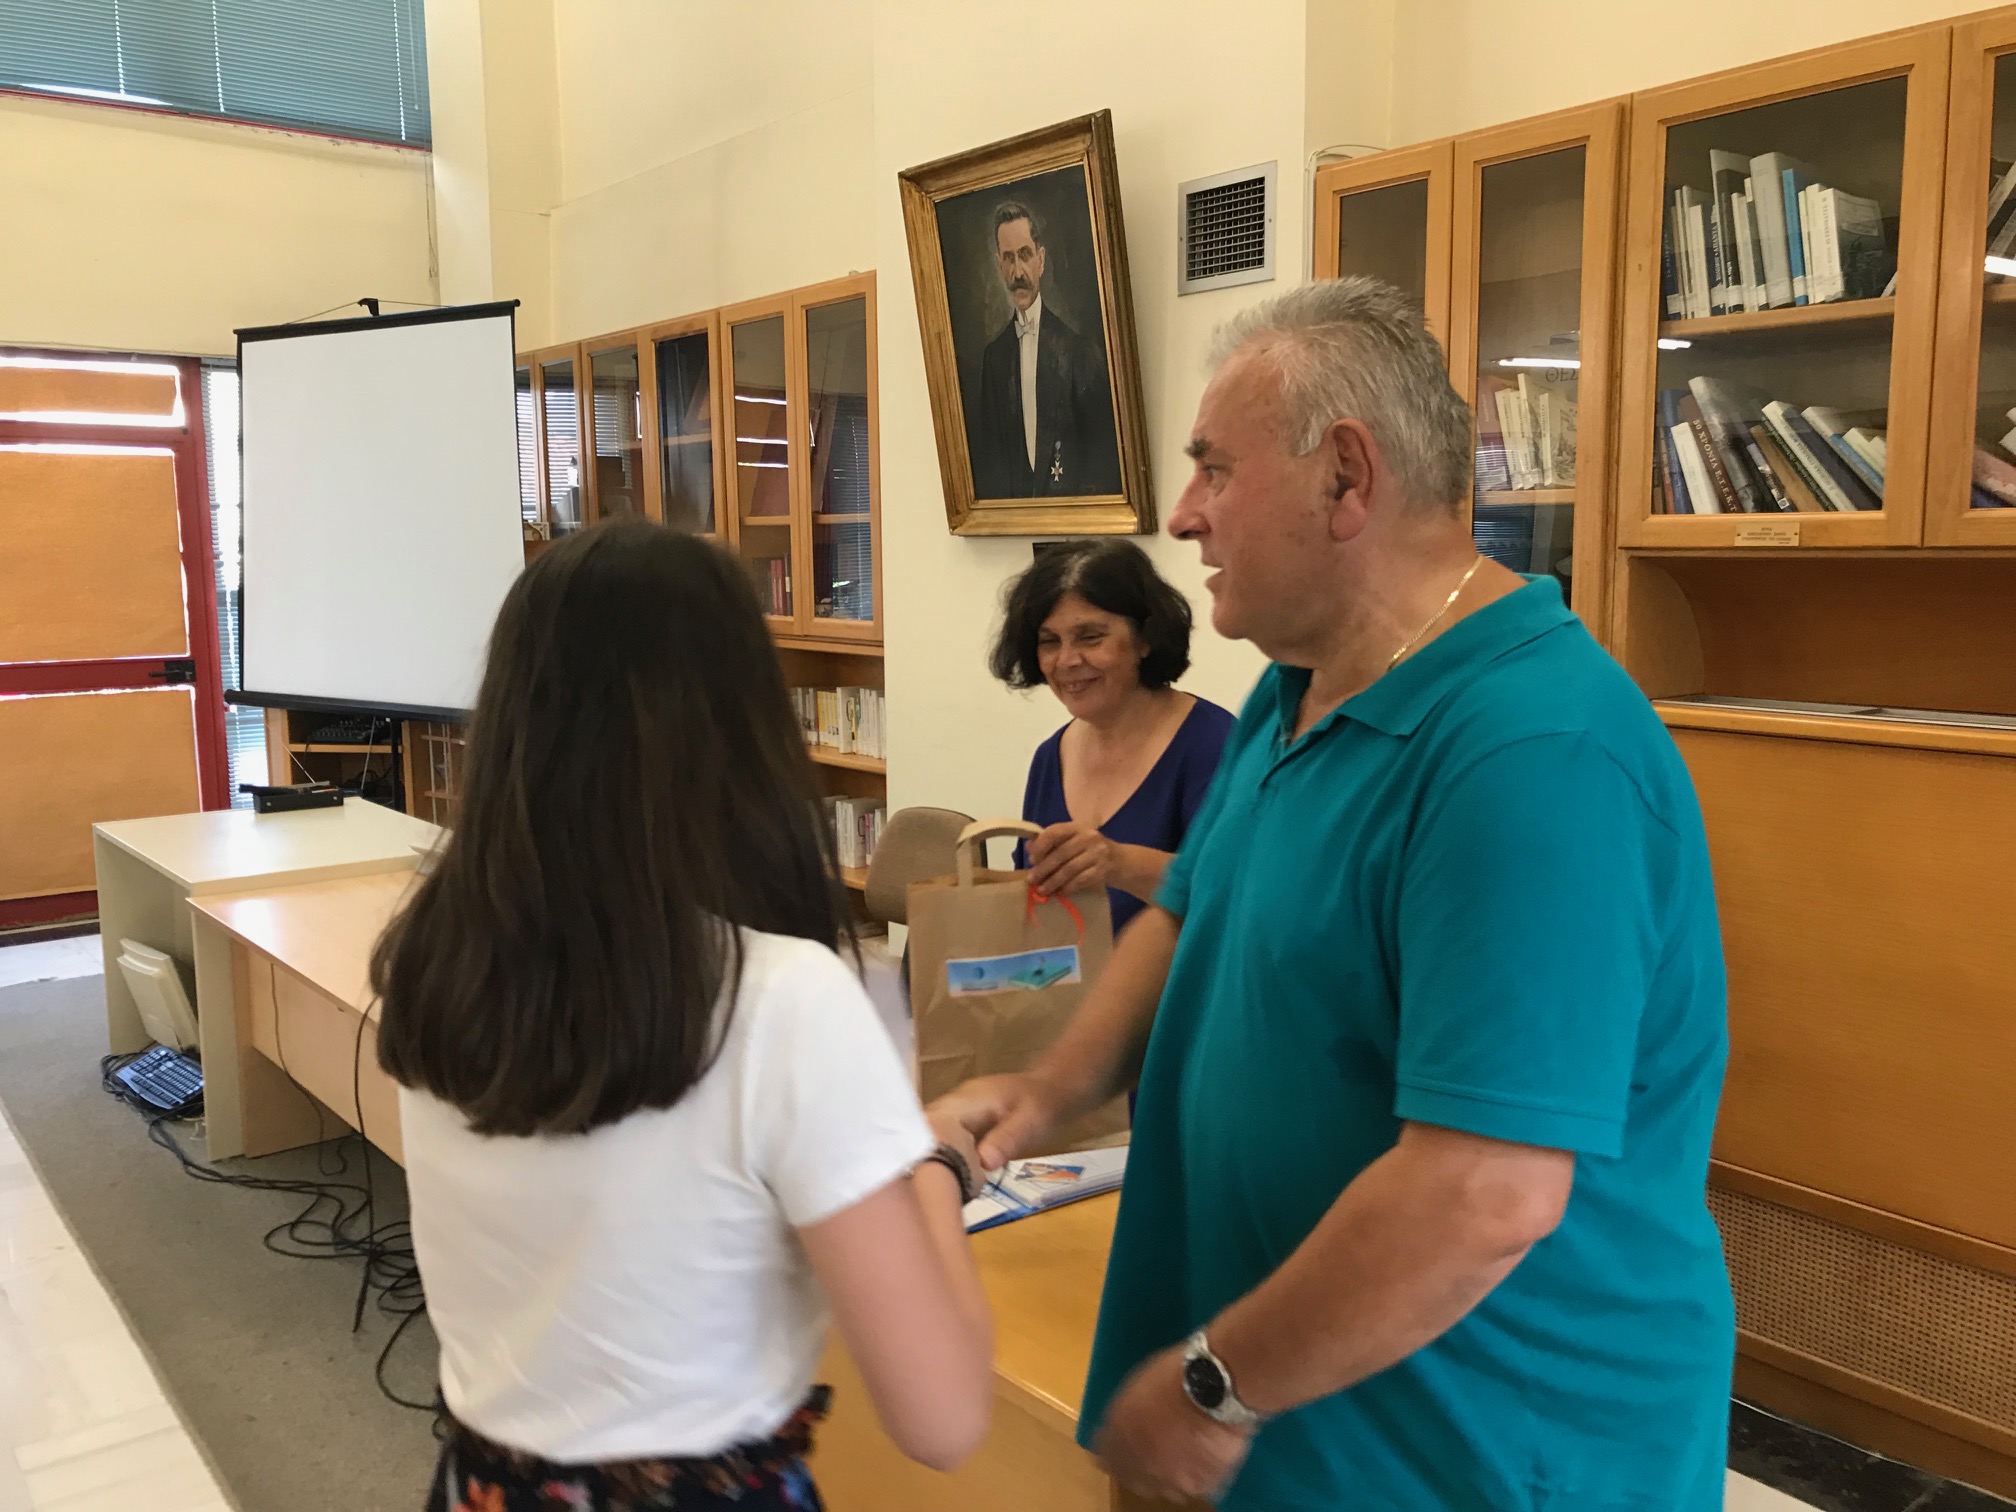 Γιορτή λήξης των εκπαιδευτικών προγραμμάτων "Καλοκαίρι 2019 στη Βιβλιοθήκη"